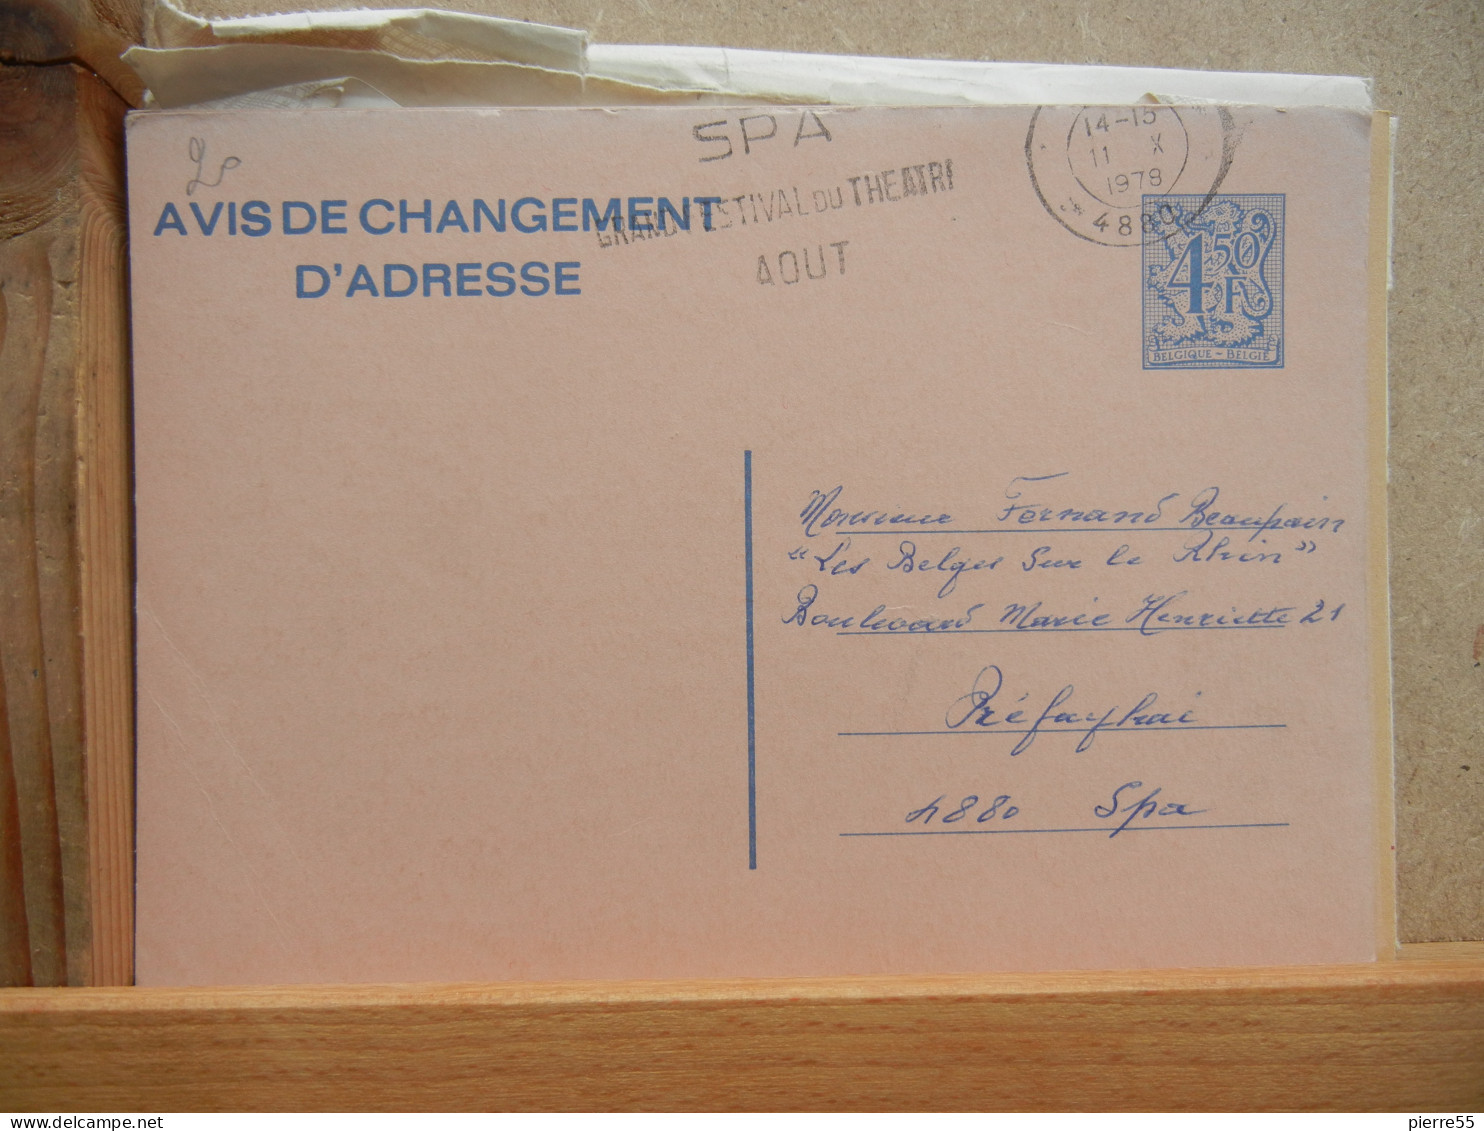 EP - Avis Changement Adresse - 4Fr50 Bleu Lion Héraldique Oblit Flamme Spa 1978 - Avviso Cambiamento Indirizzo